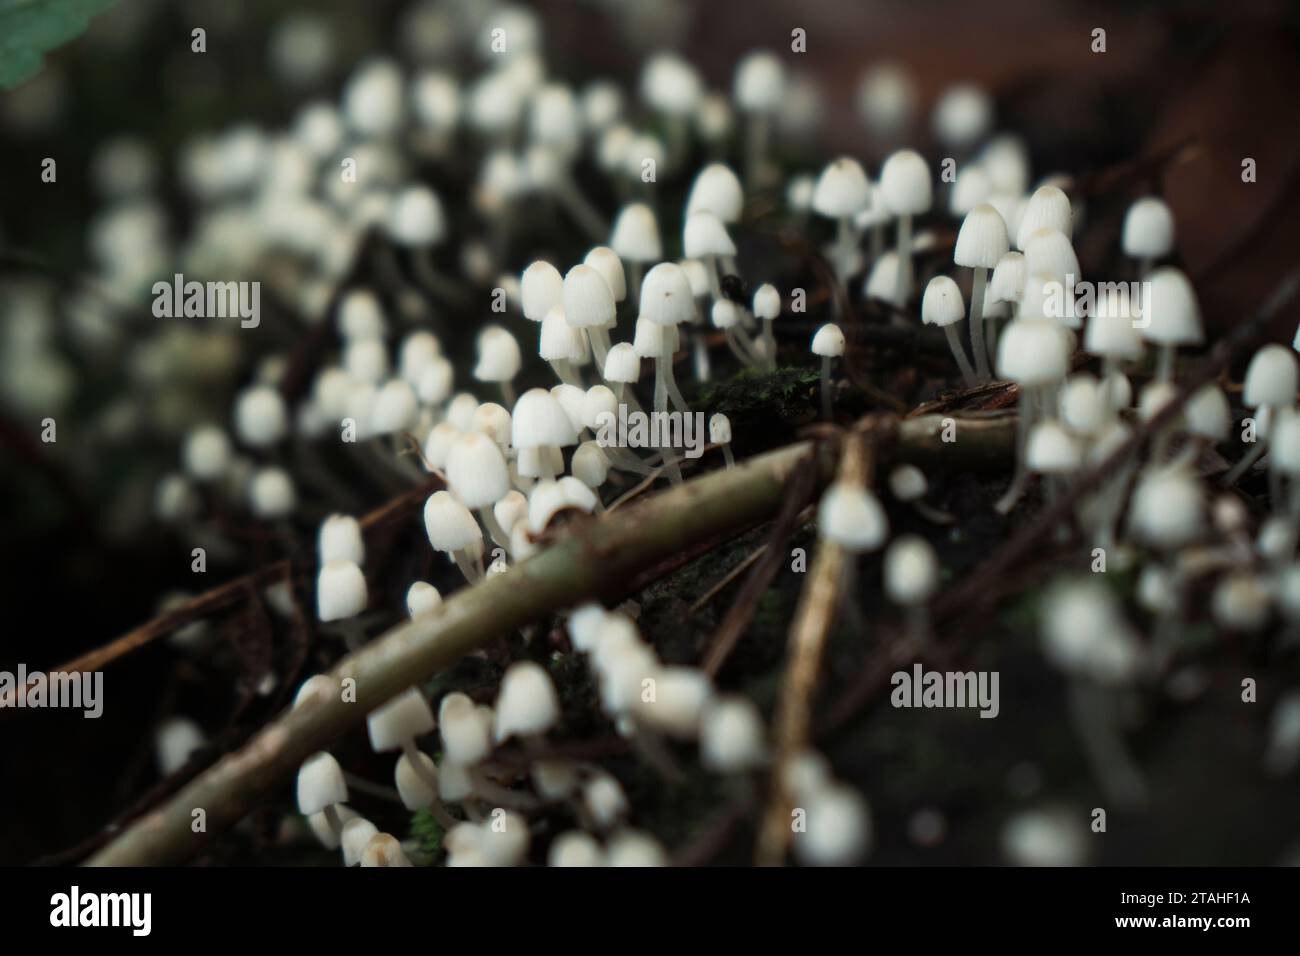 Communauté de minuscules champignons blancs poussant sur une bûche pourrie Banque D'Images